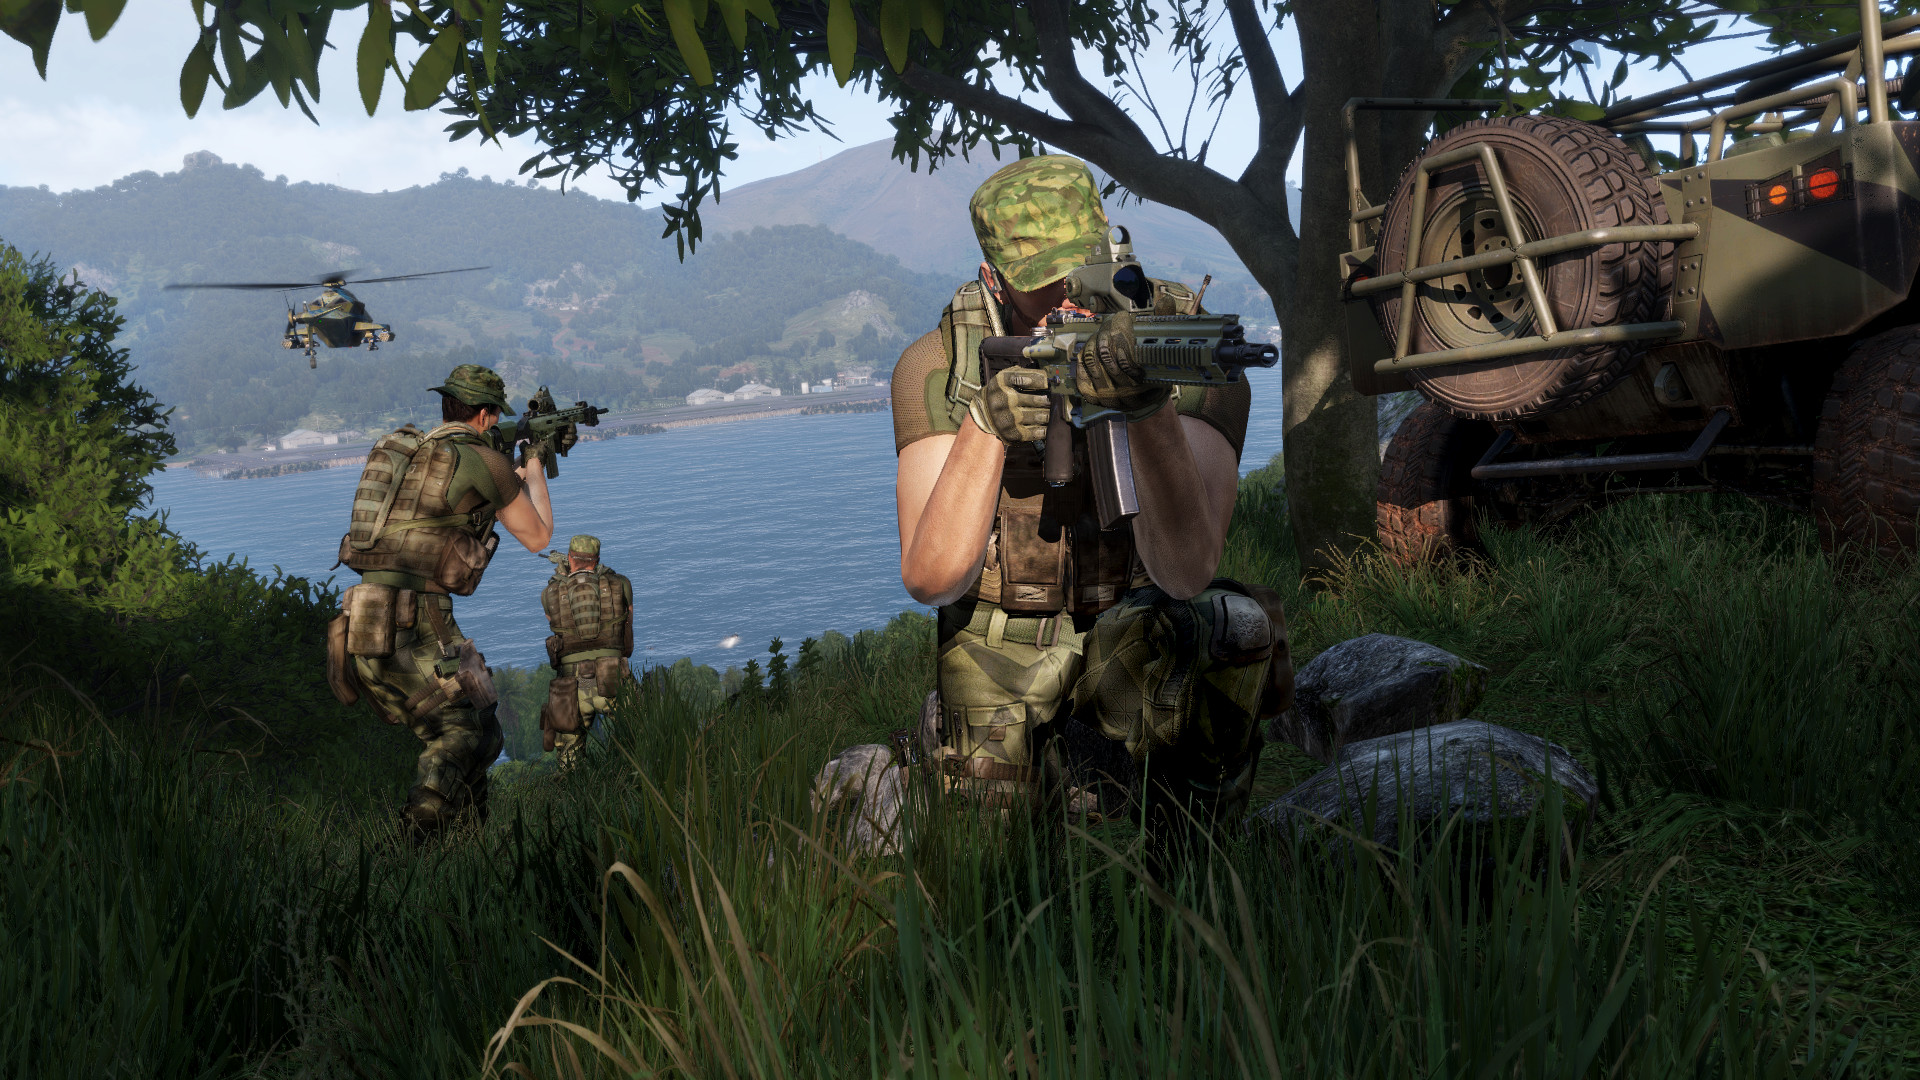 Bästa krigsspel: Arma 3. Bild visar soldater som går runt i djungeln